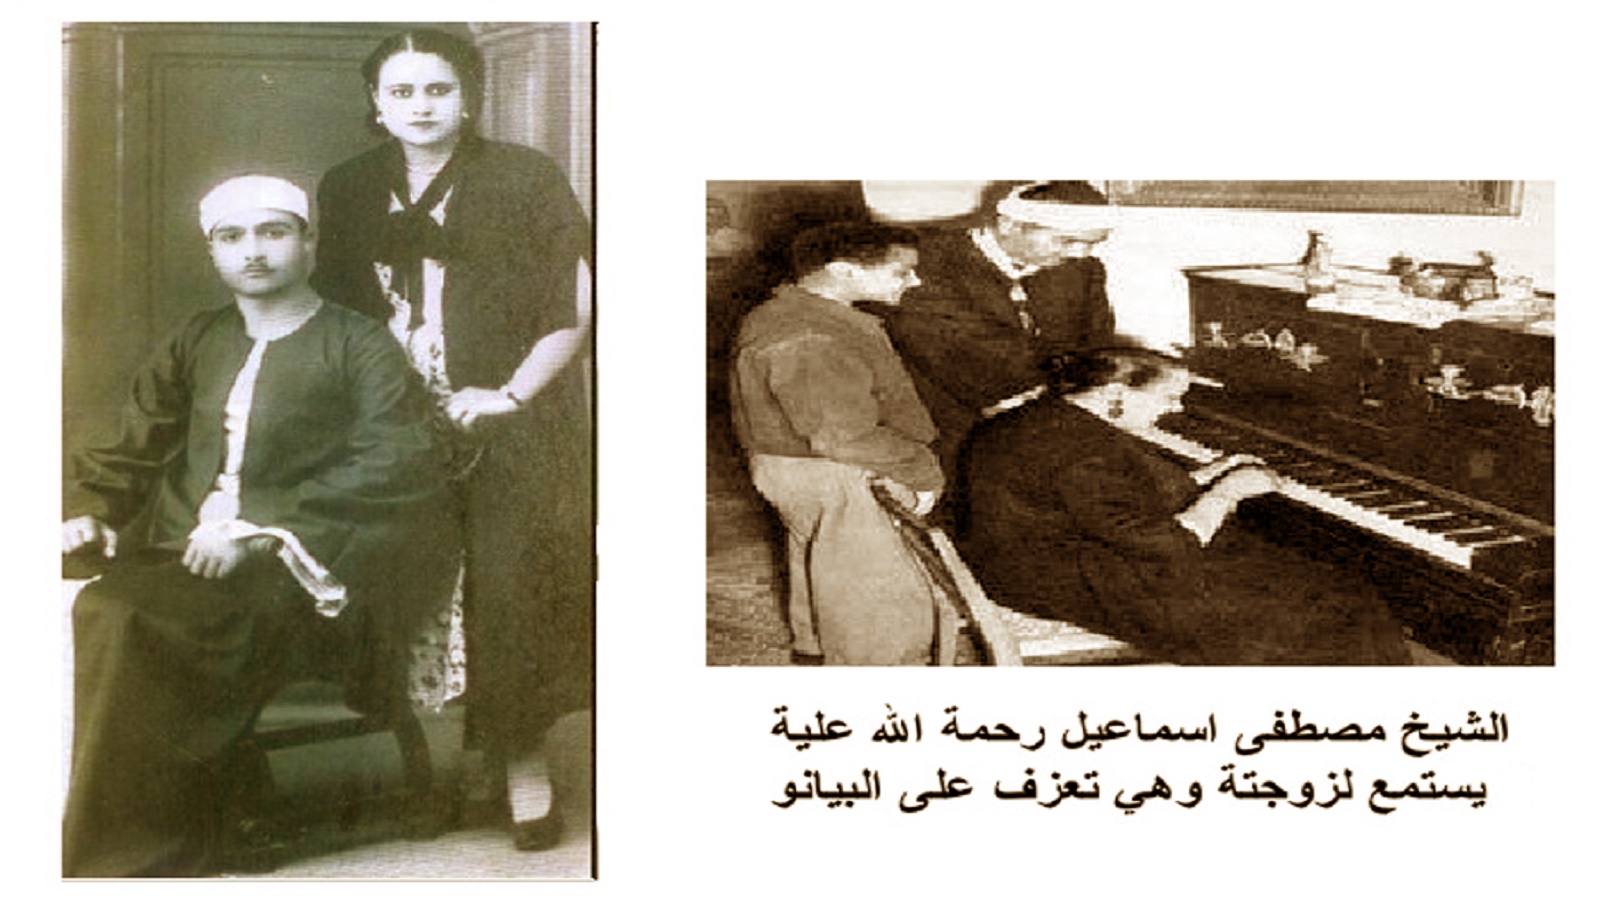 الشيخ مصطفى اسماعيل مع زوجته.